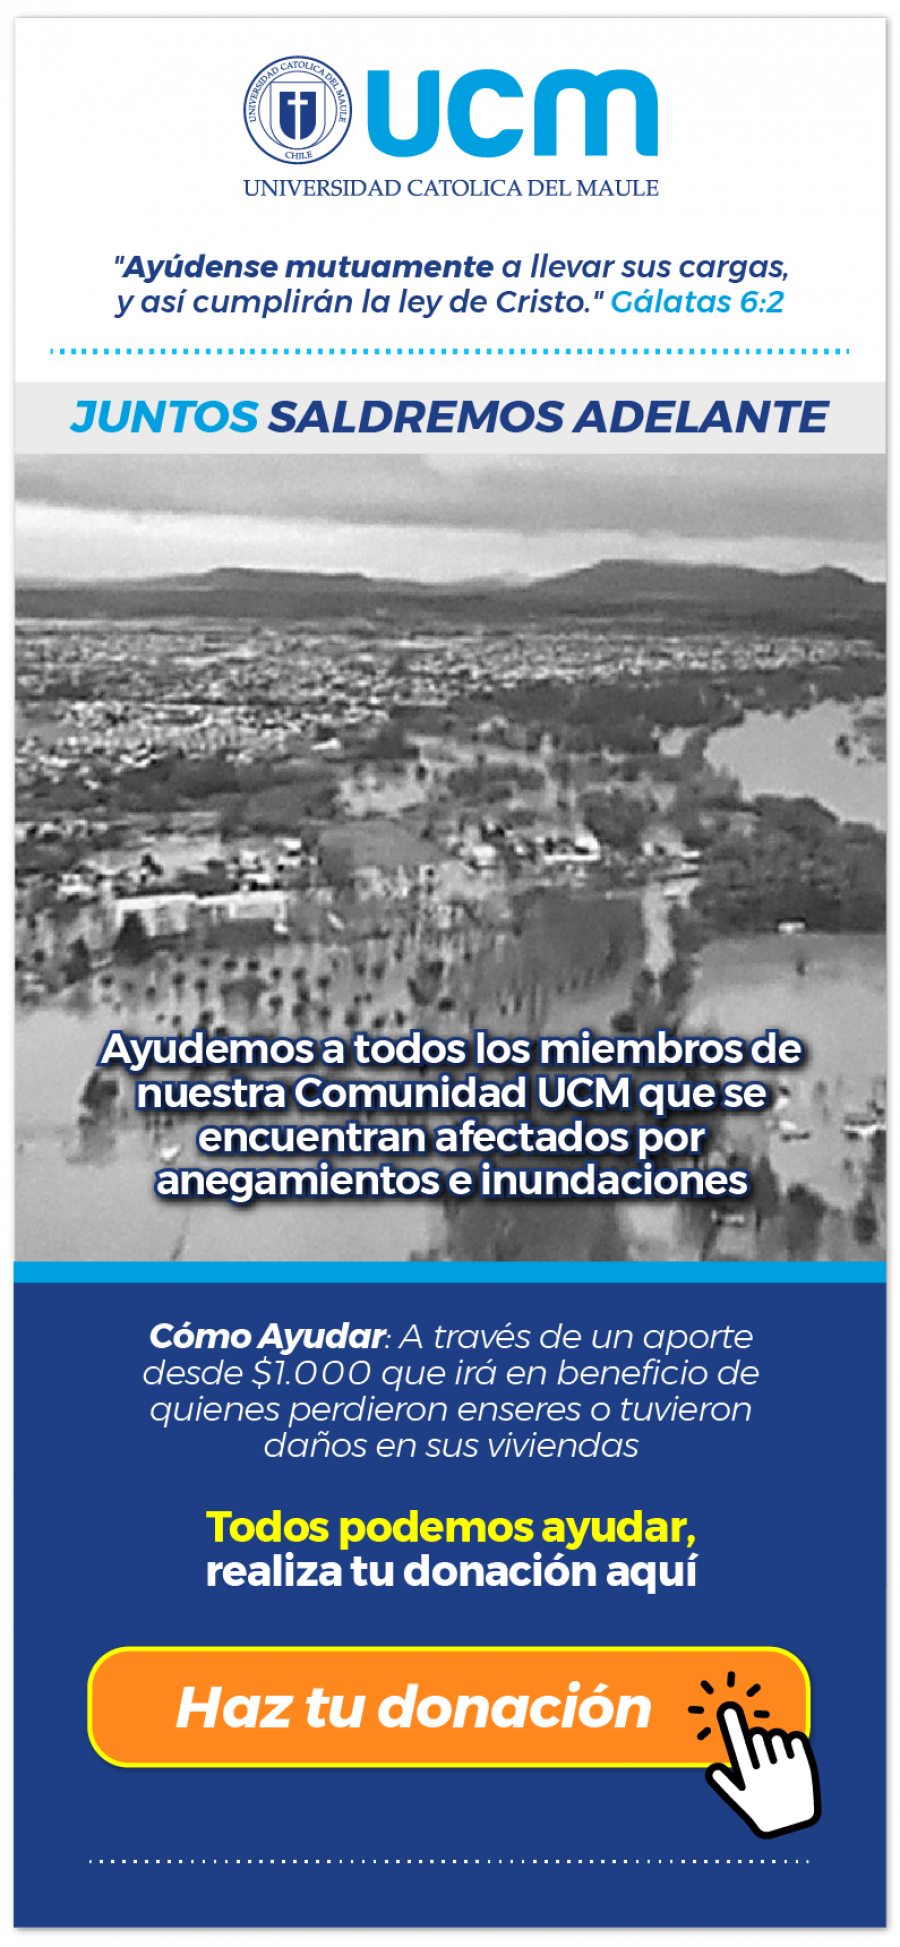 UCM lanza campaña en ayuda a los miembros de su comunidad afectados por el agua